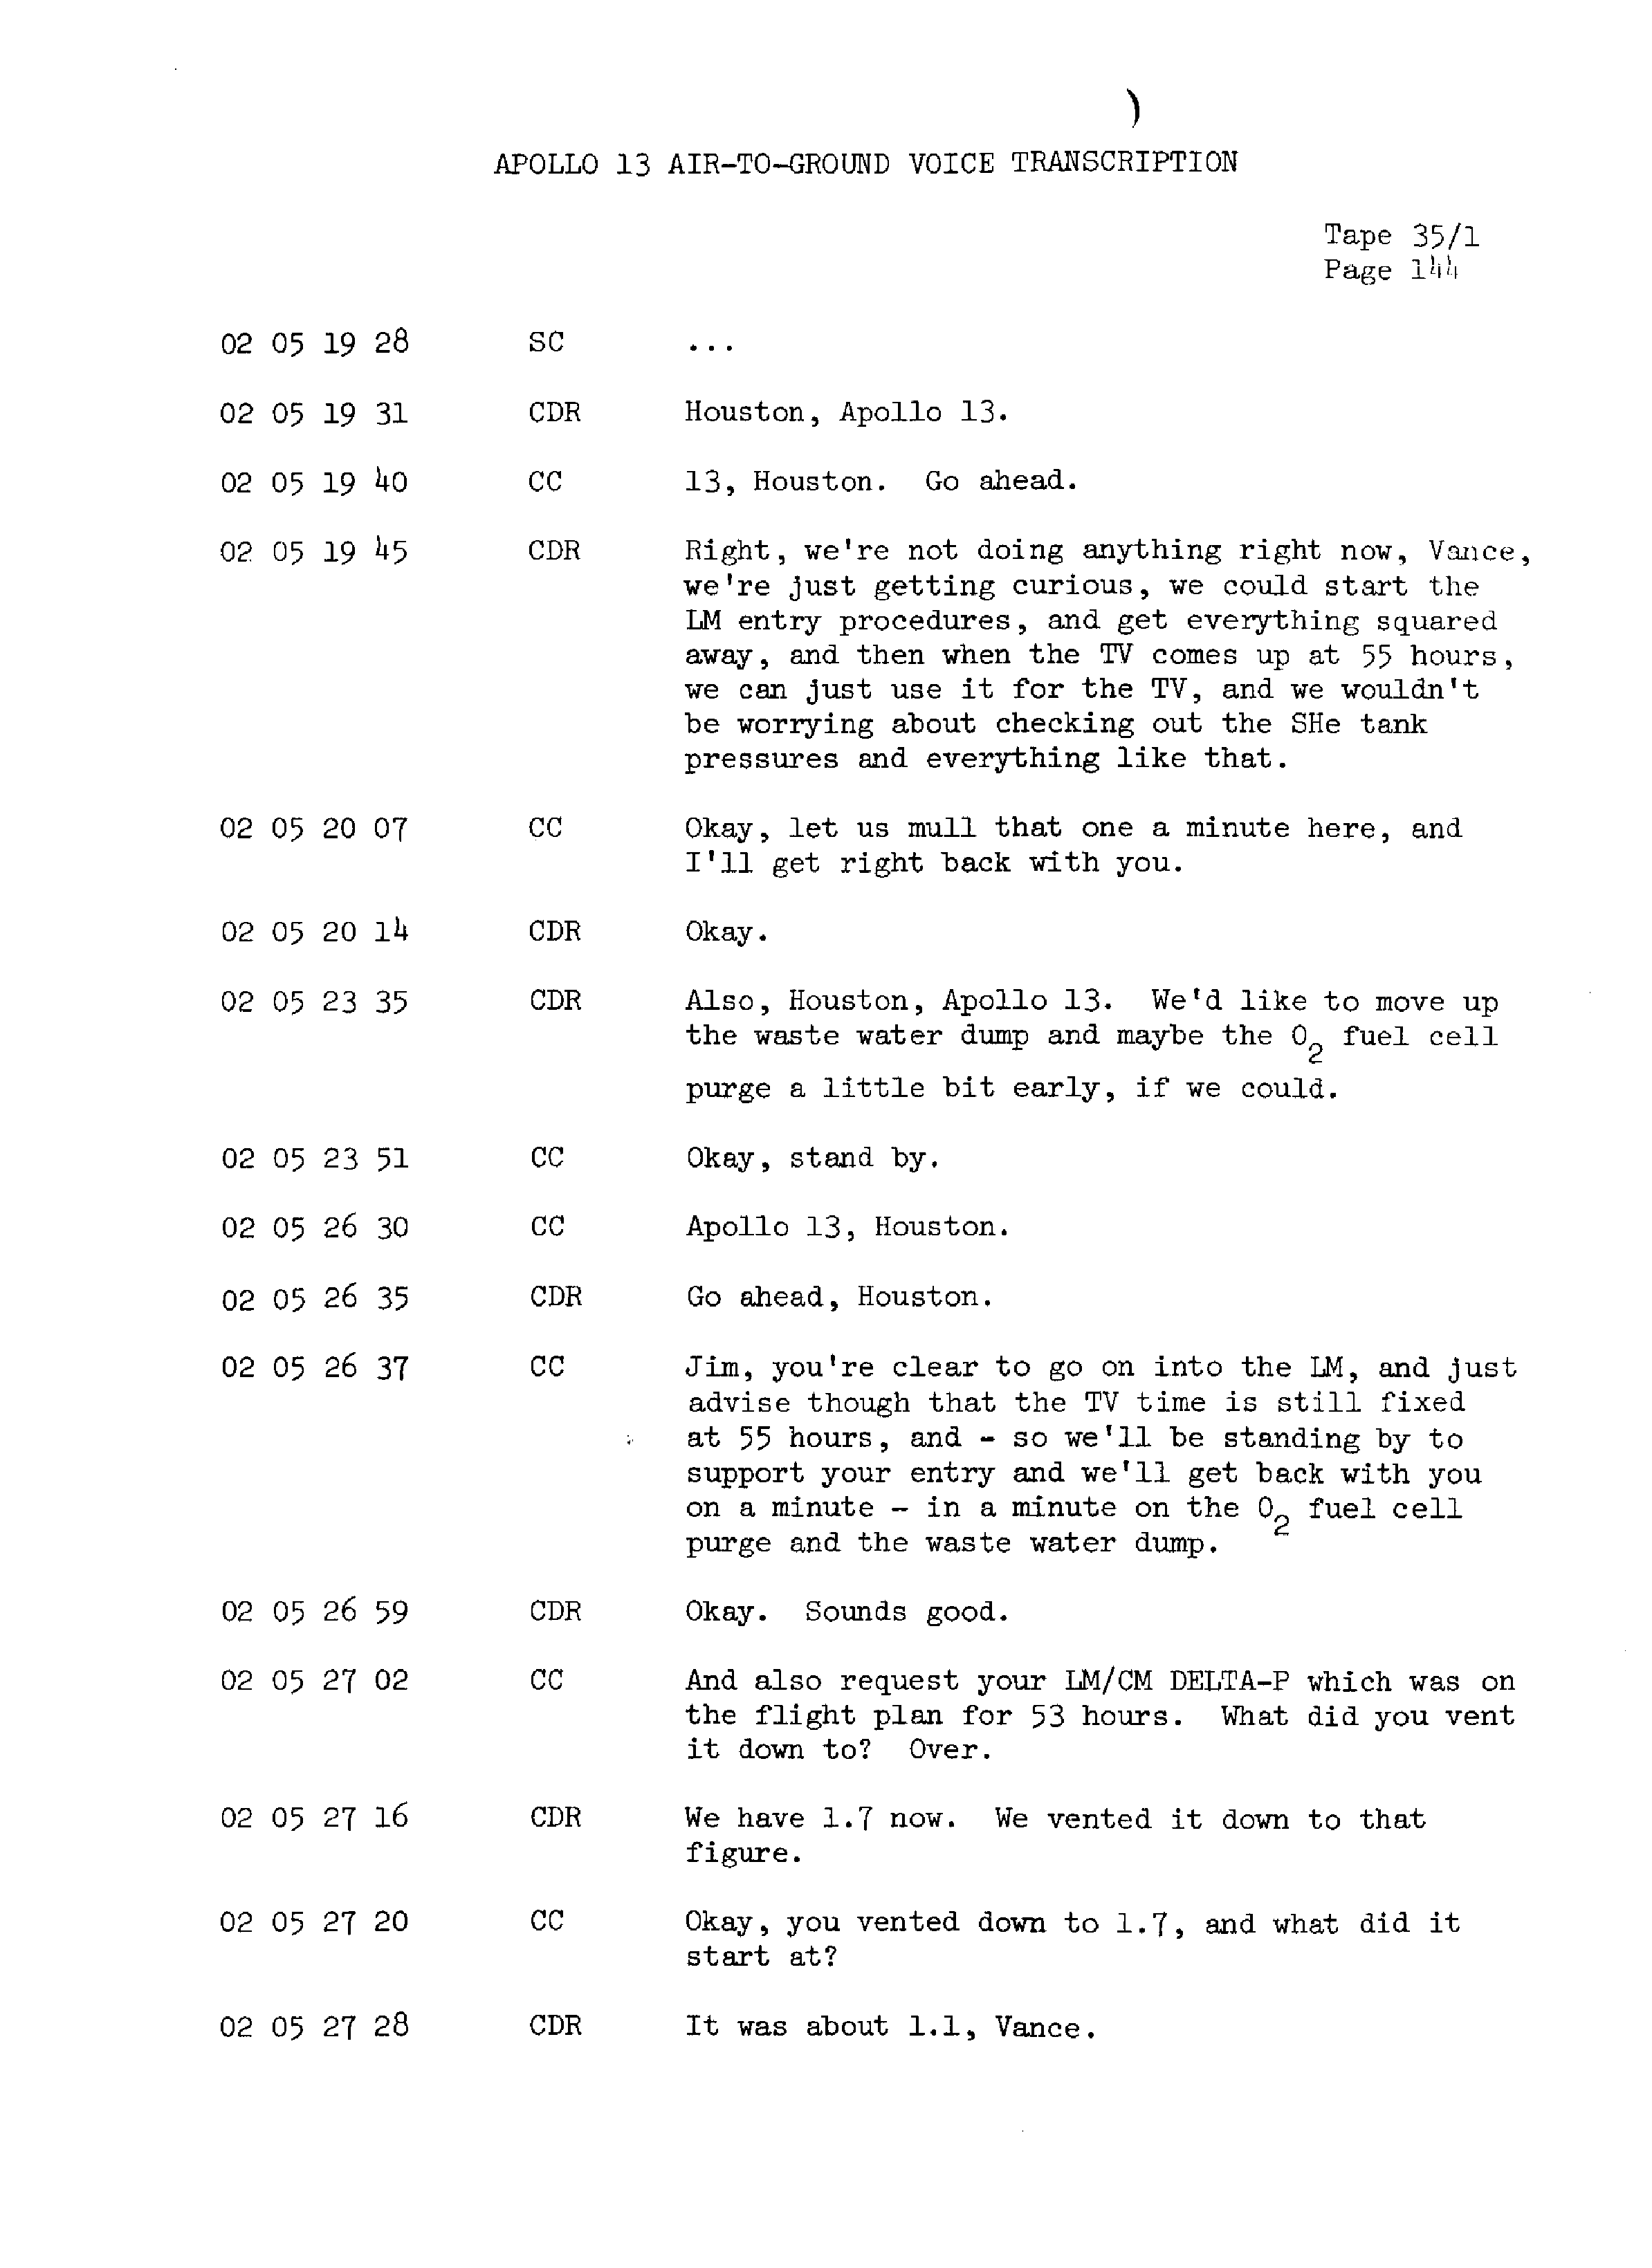 Page 151 of Apollo 13’s original transcript